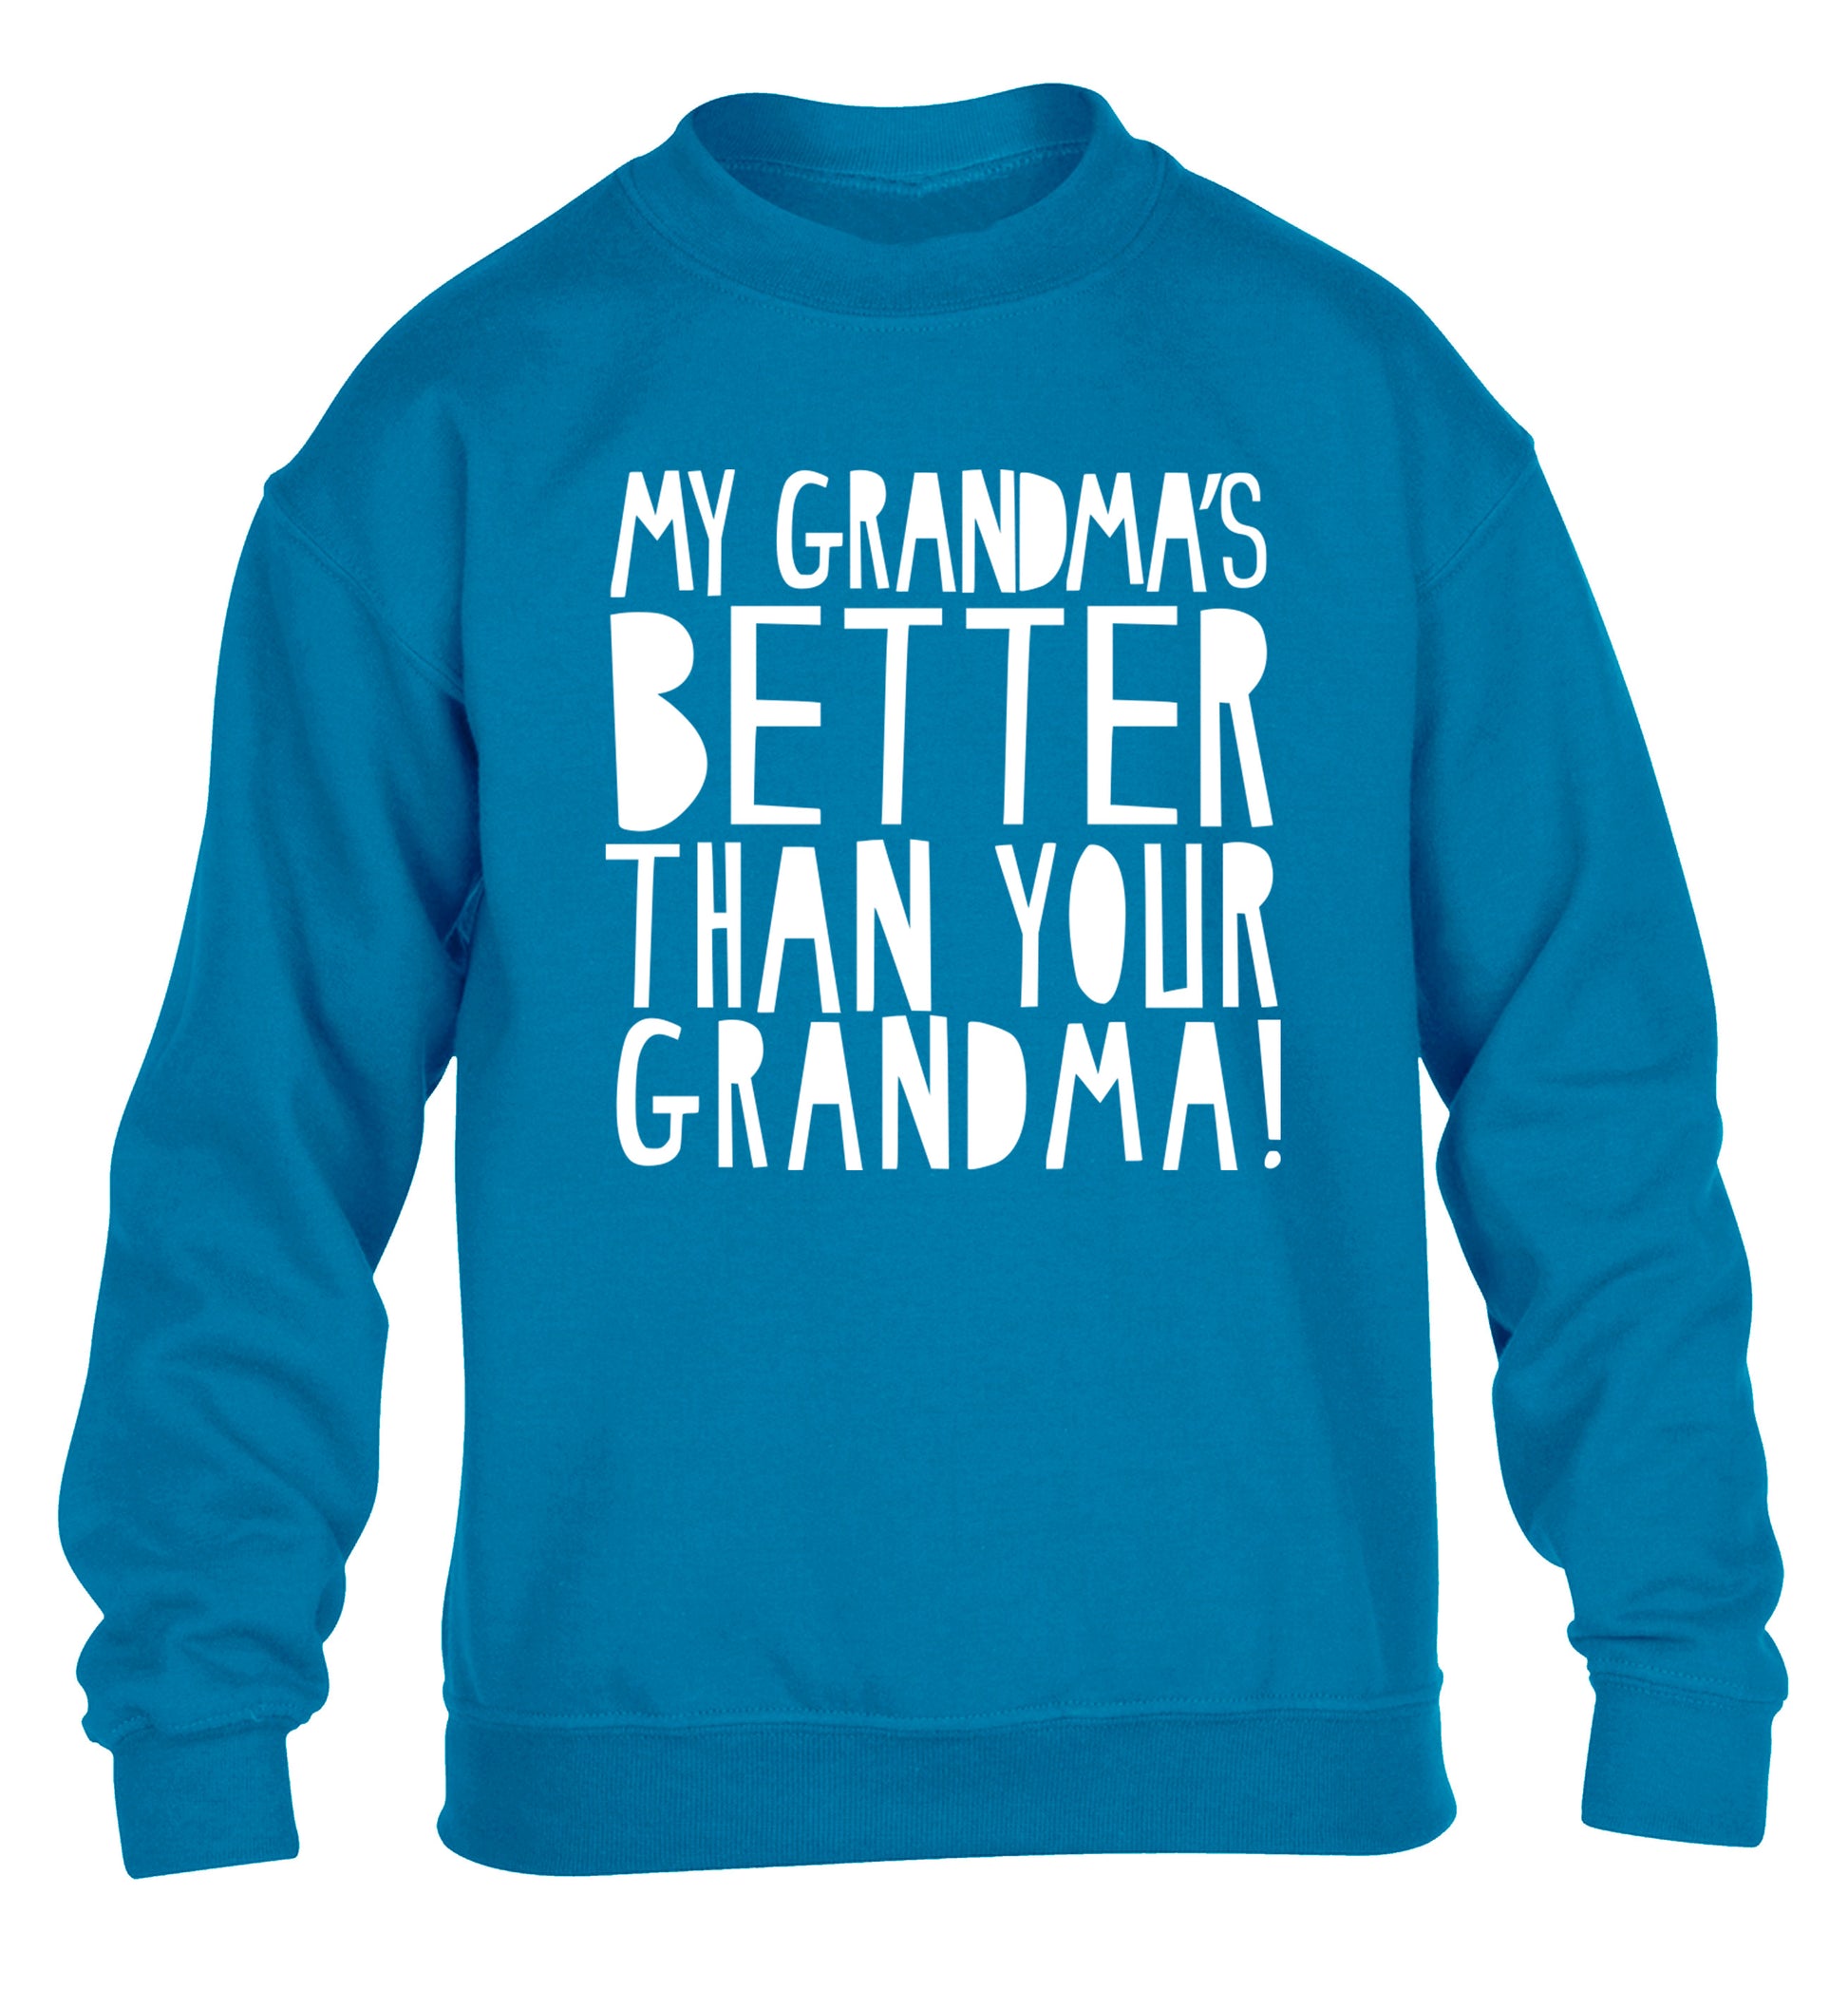 My grandma's better than your grandma children's blue sweater 12-13 Years